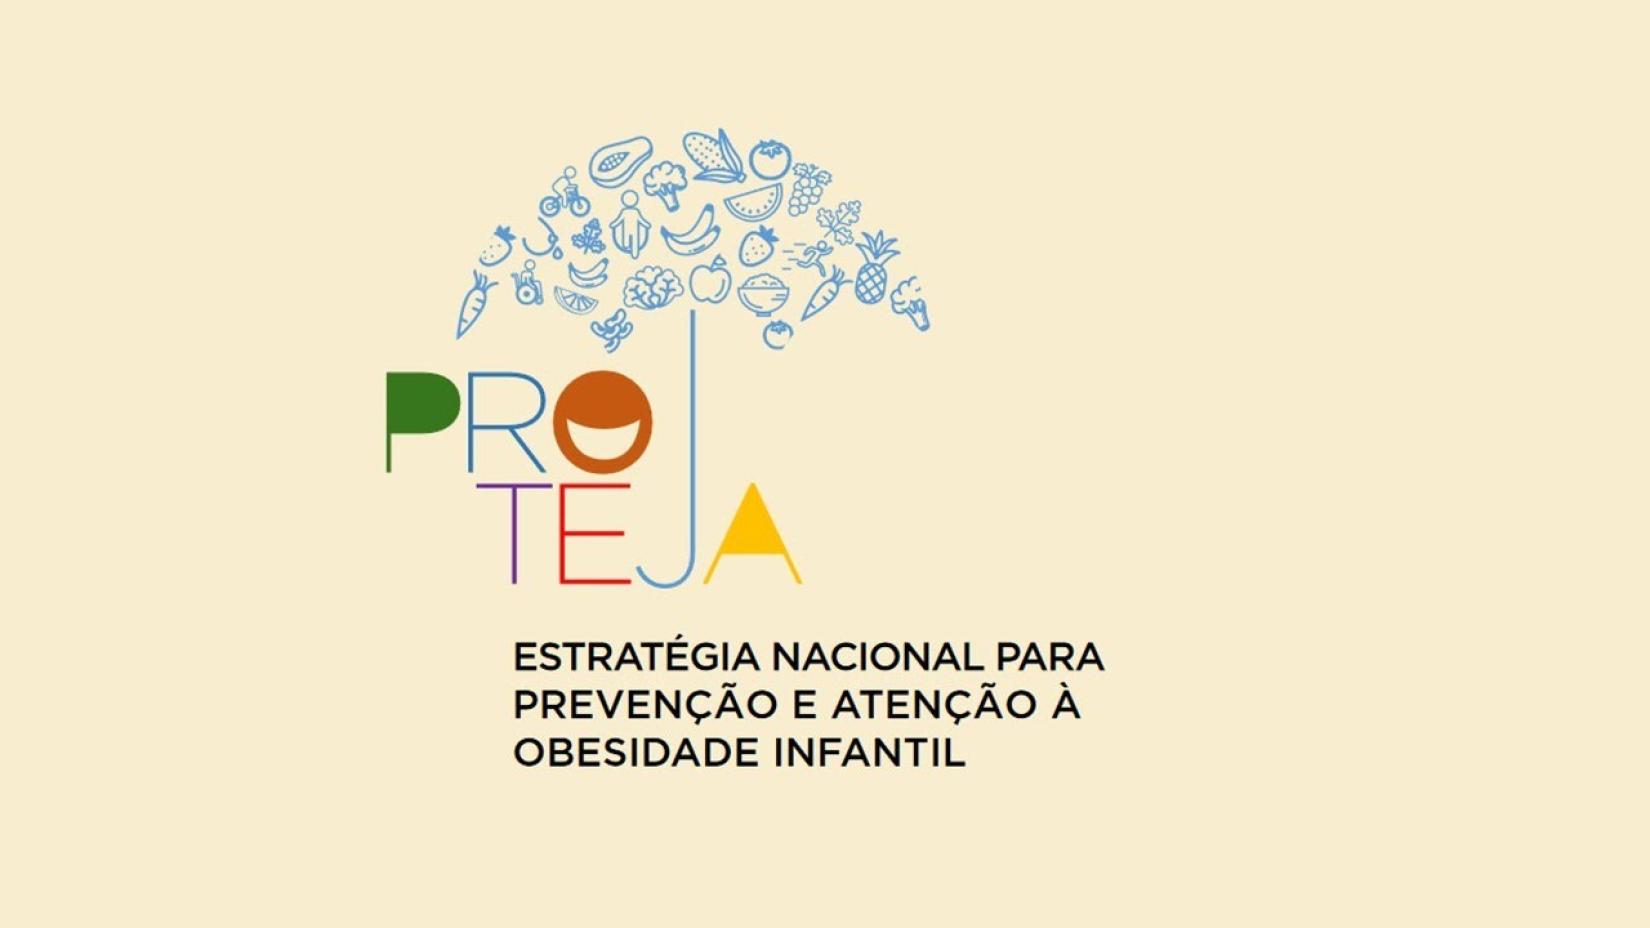 Proteja foi lançado em 2021 pelo Ministério da Saúde para deter o aumento da obesidade infantil no país.